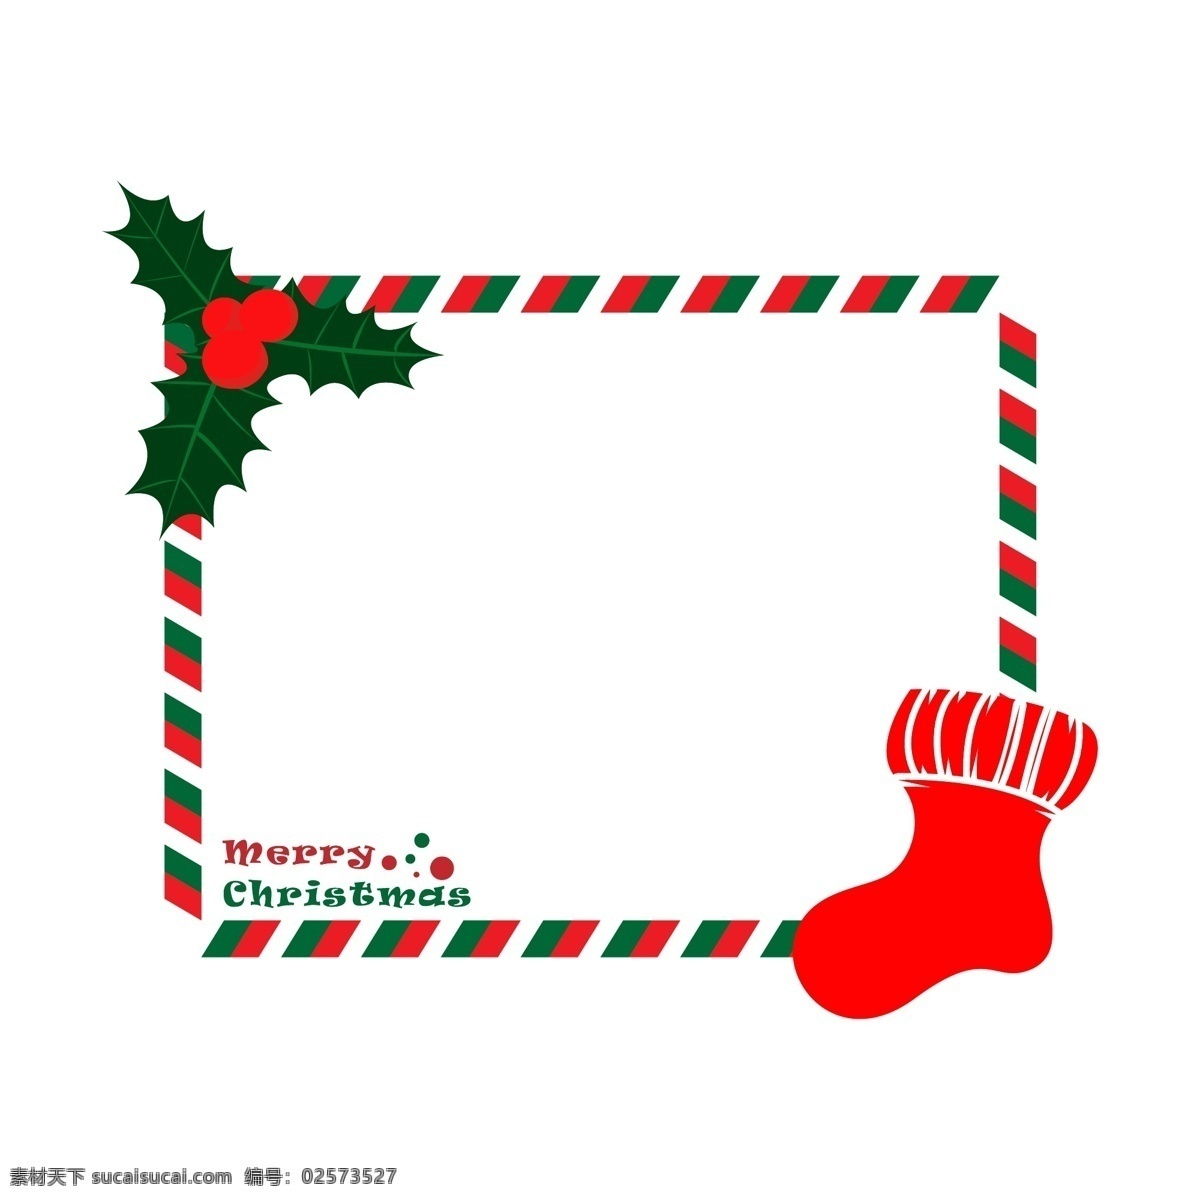 圣诞节 圣诞 元素 贺卡 边框 圣诞夜 红袜子 卡通插画风格 海报 banner